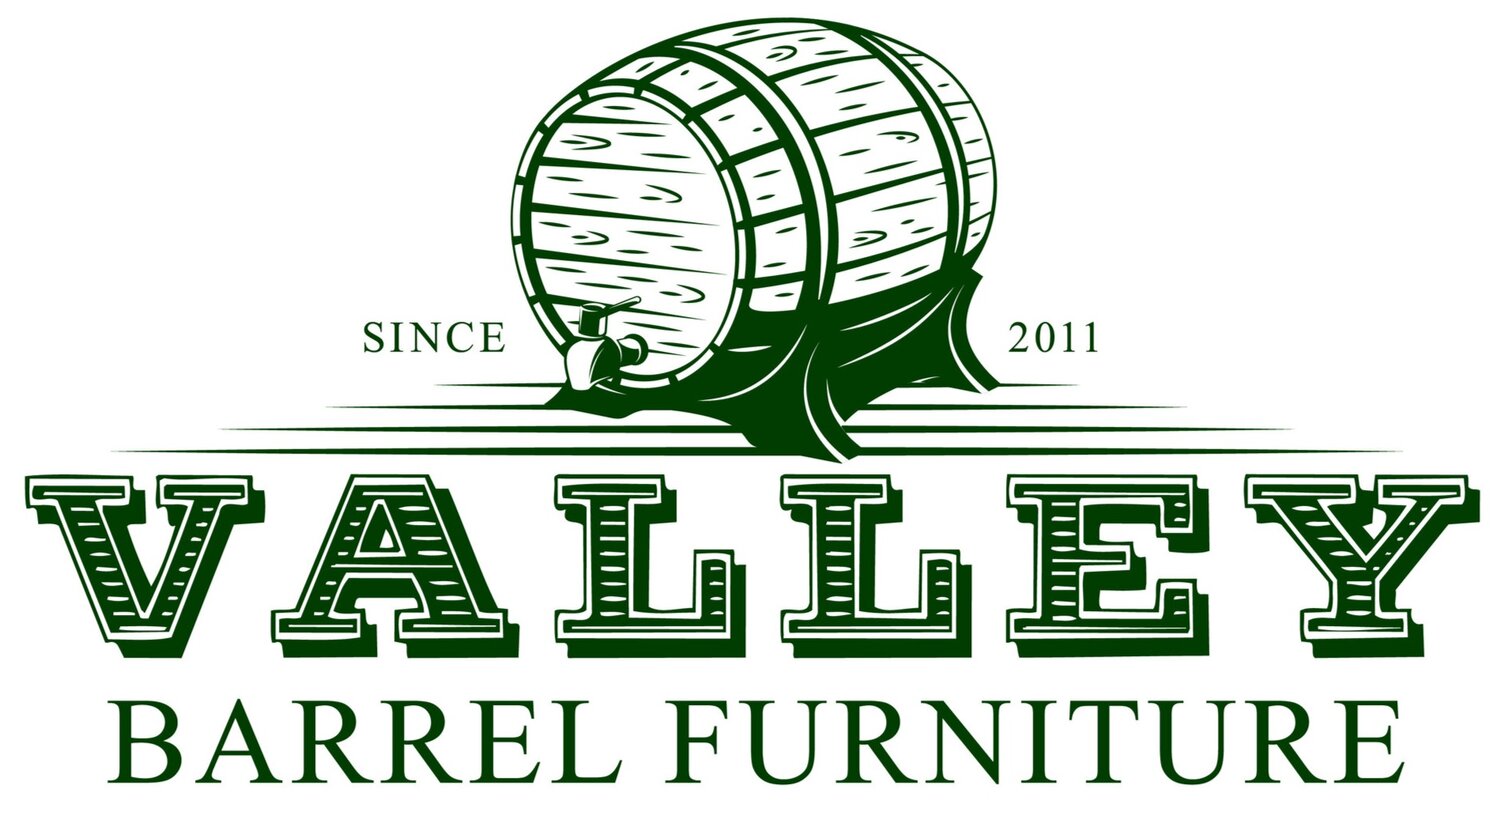 Valley Barrel Furniture